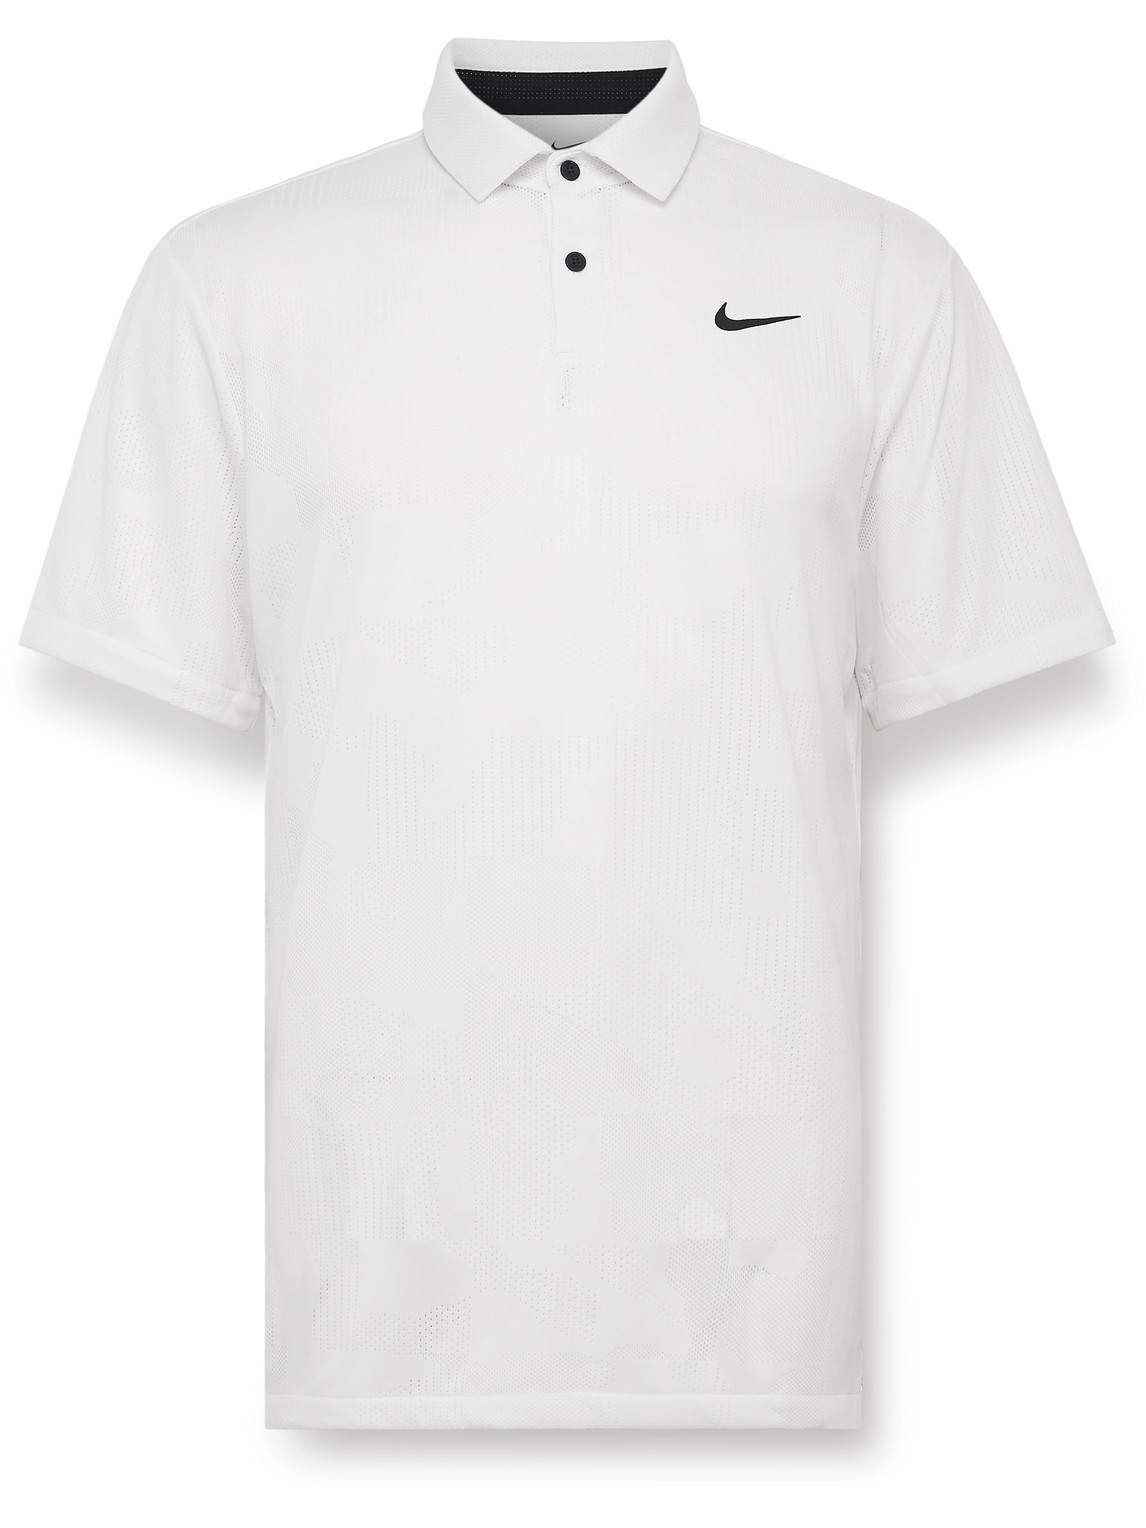 Nike Dri-fit Tour Jacquard Golf Polo In White/ Black | ModeSens